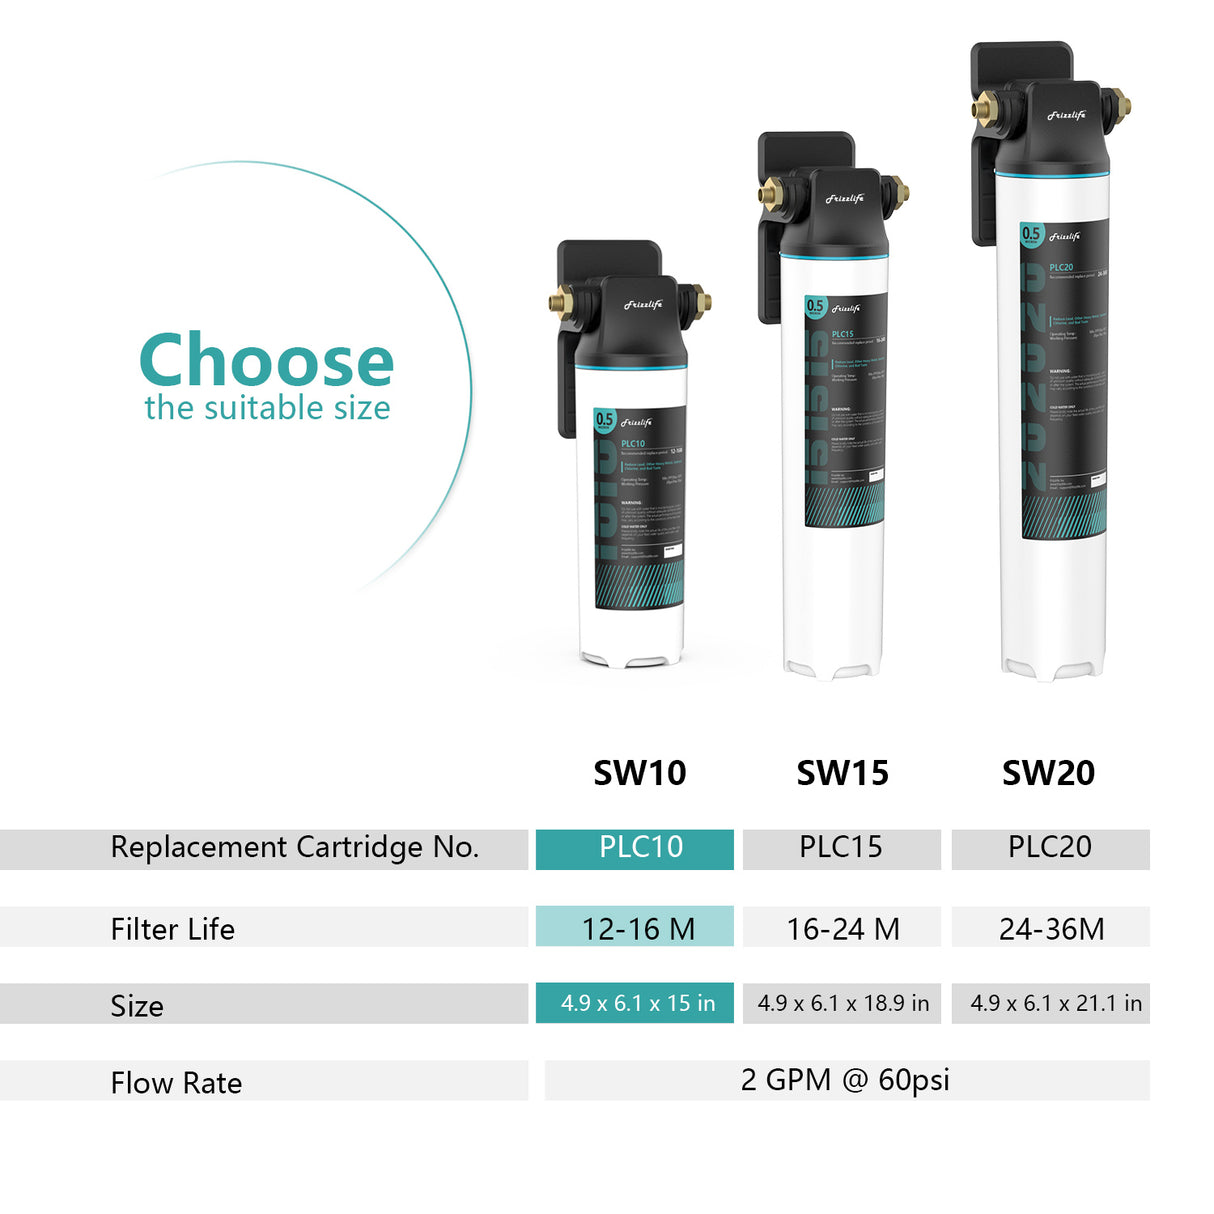 Sistema de filtro de agua Frizzlife SW10 de conexión directa debajo del fregadero, reduce el 99,99% de plomo, cloro, mal sabor y olor